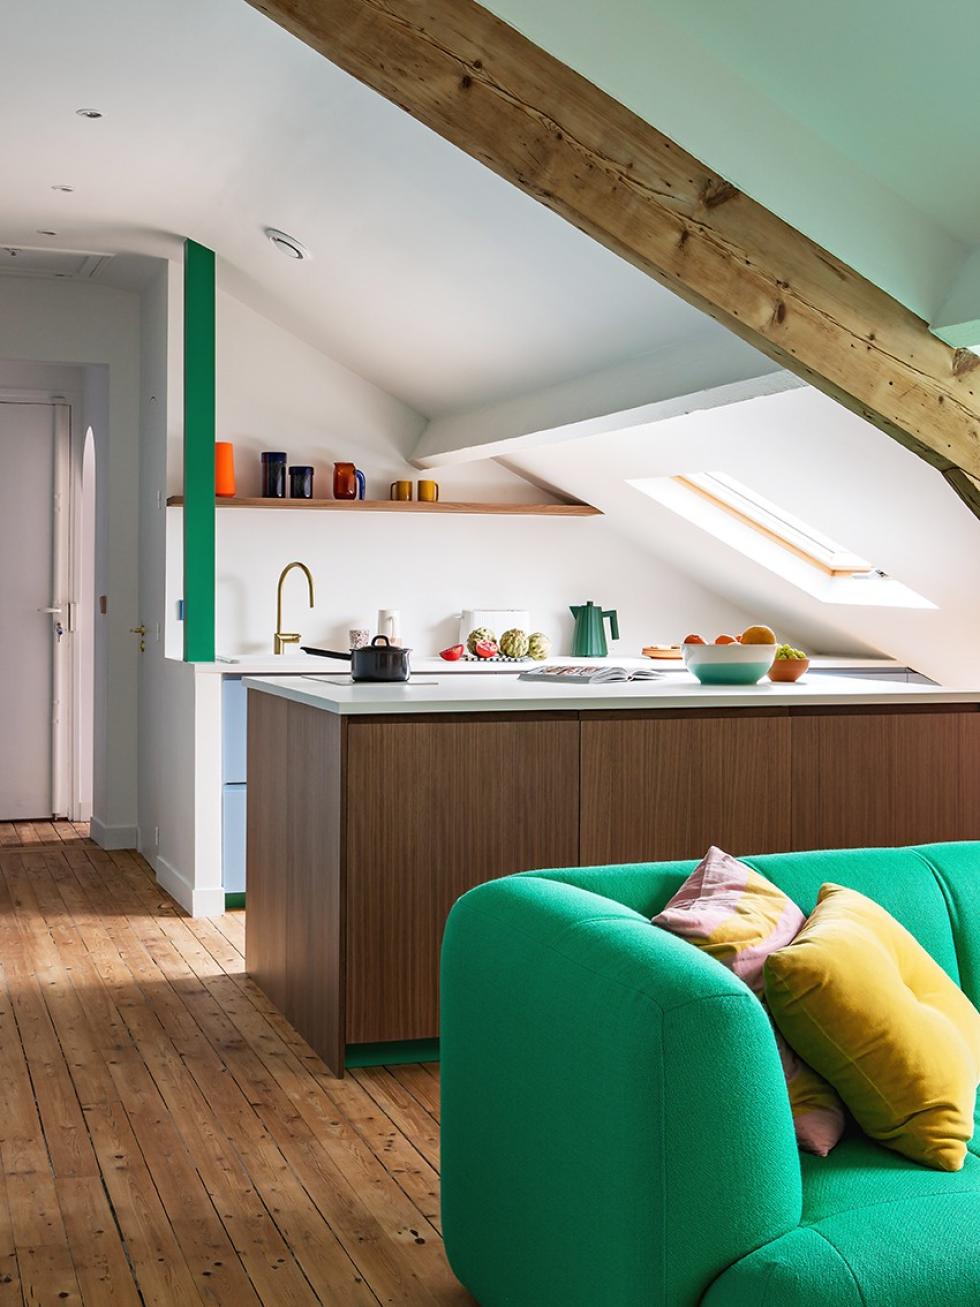 Küche im Dachgeschoss vom Wohnzimmer aus gesehen mit grünem Hay-Sofa im Vordergrund.